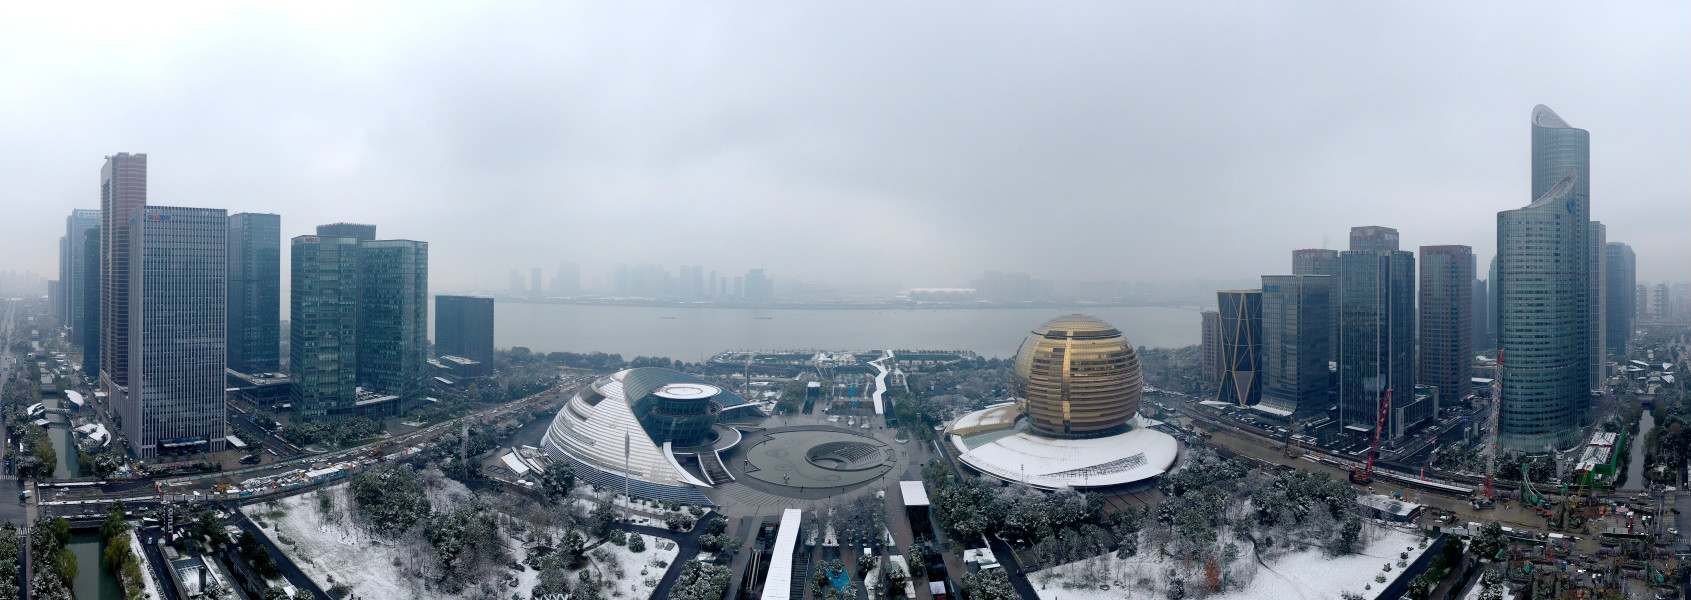 航拍雪后杭城 在冰雪中迎接新年